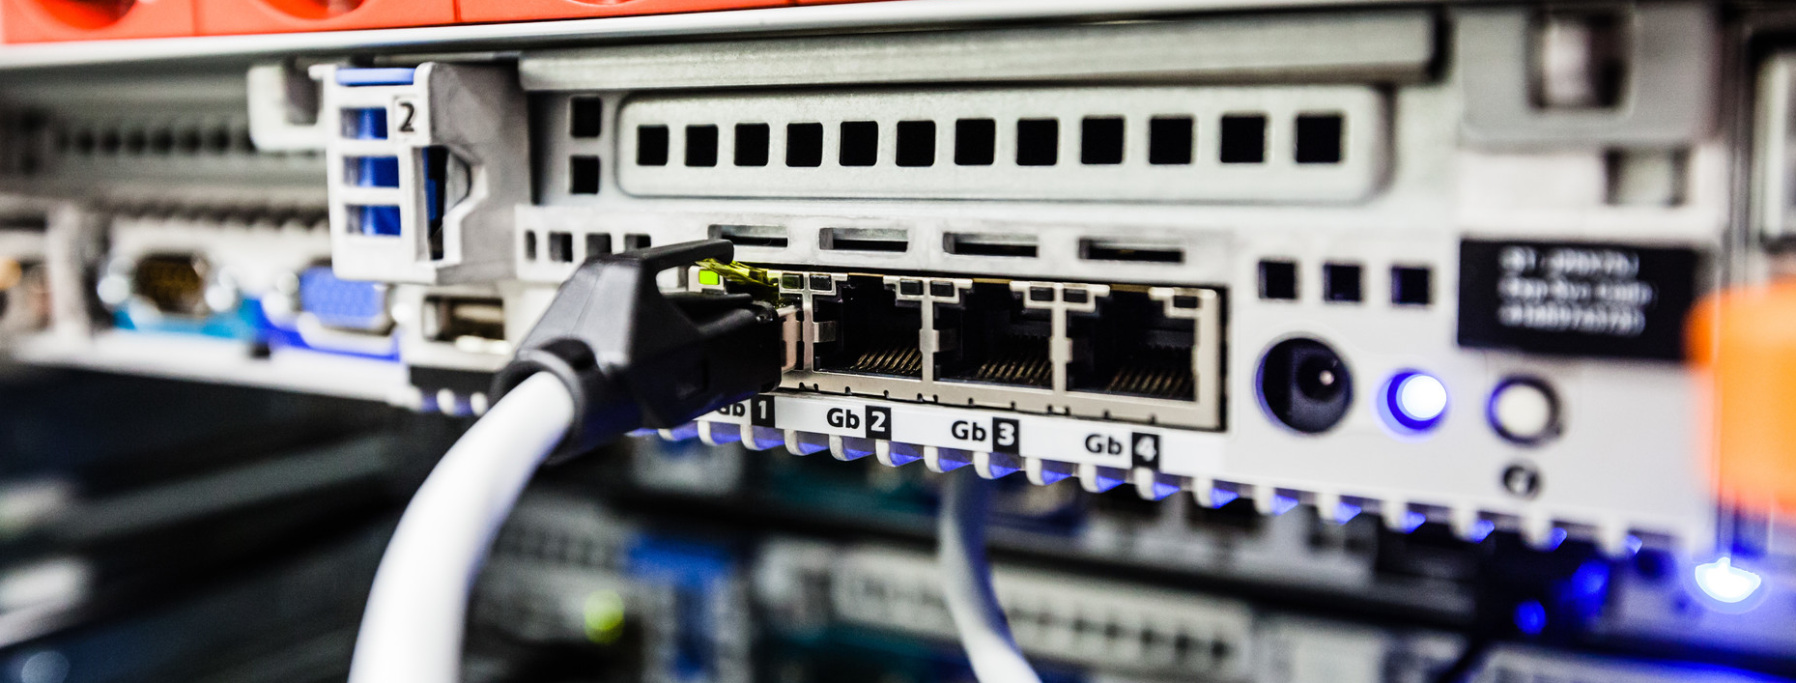 Digitalbonus (im Bild zu sehen sind Anschlüsse und Kabel in einem Serverraum)